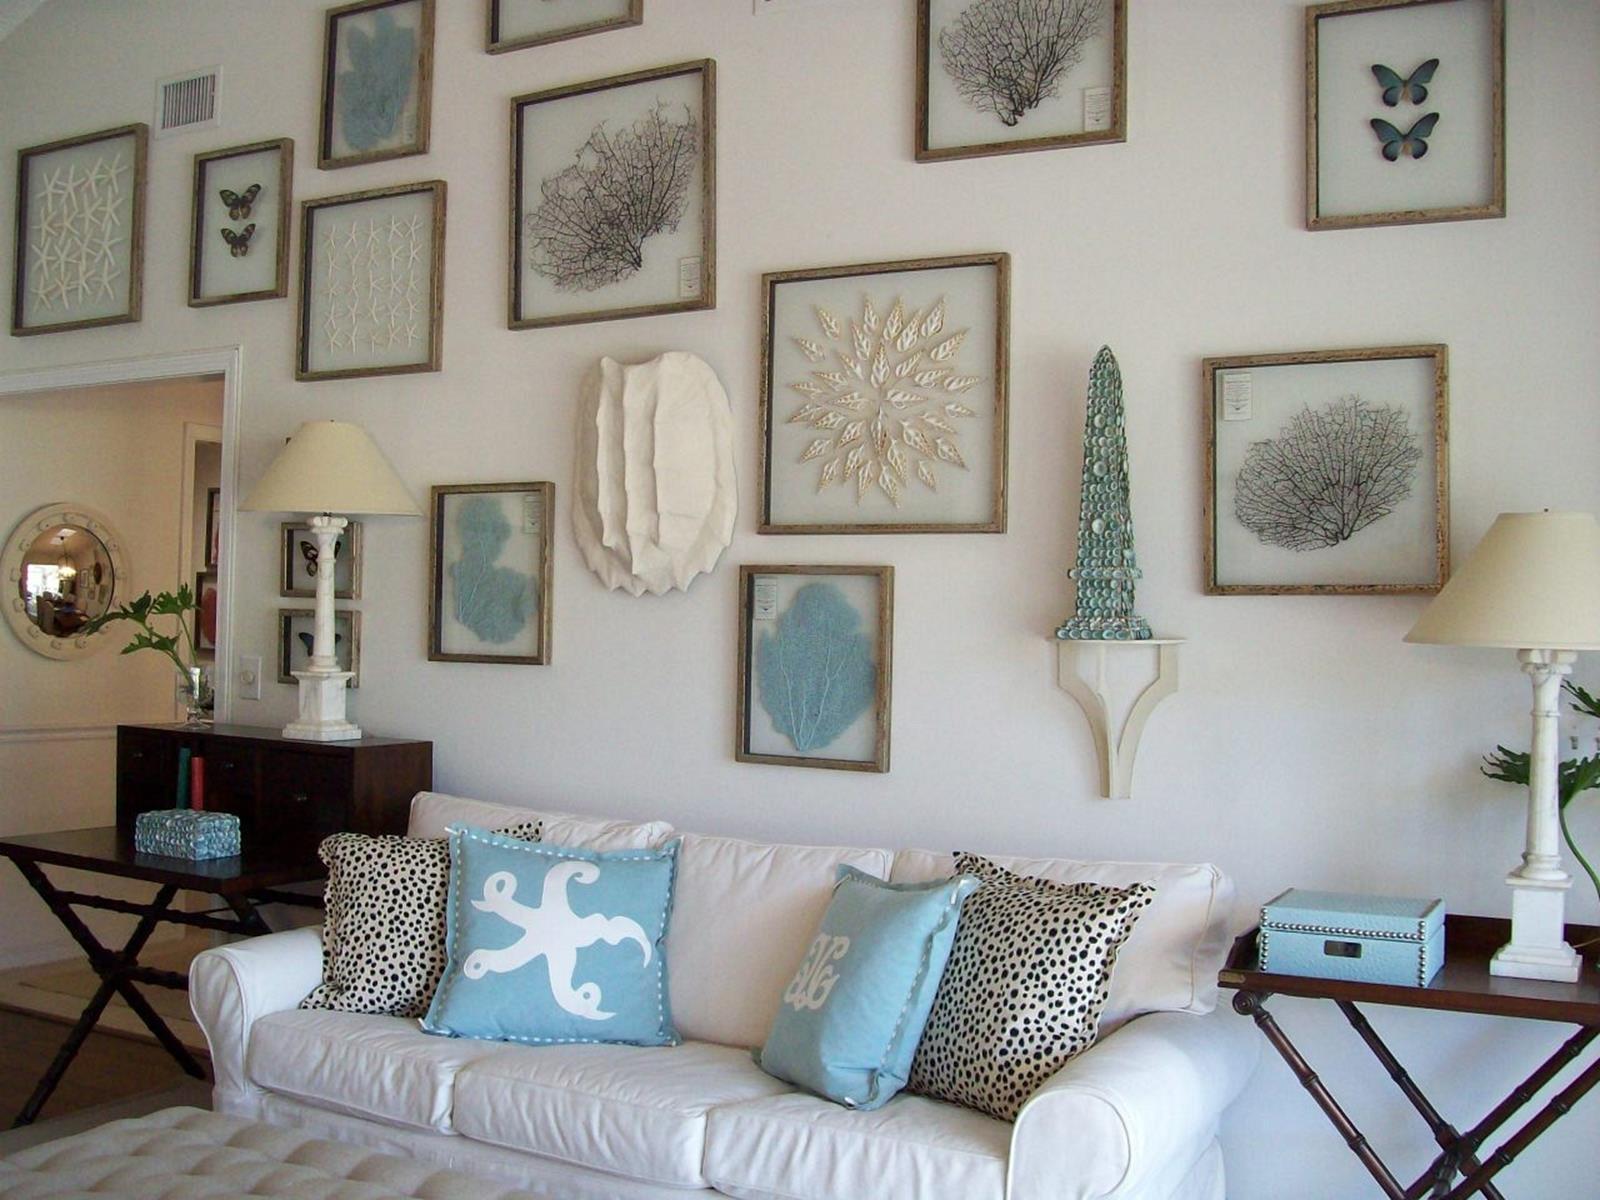 Цветы на стене - 115 фото интересных сочетаний и лучших решений для украшения квартиры и дома